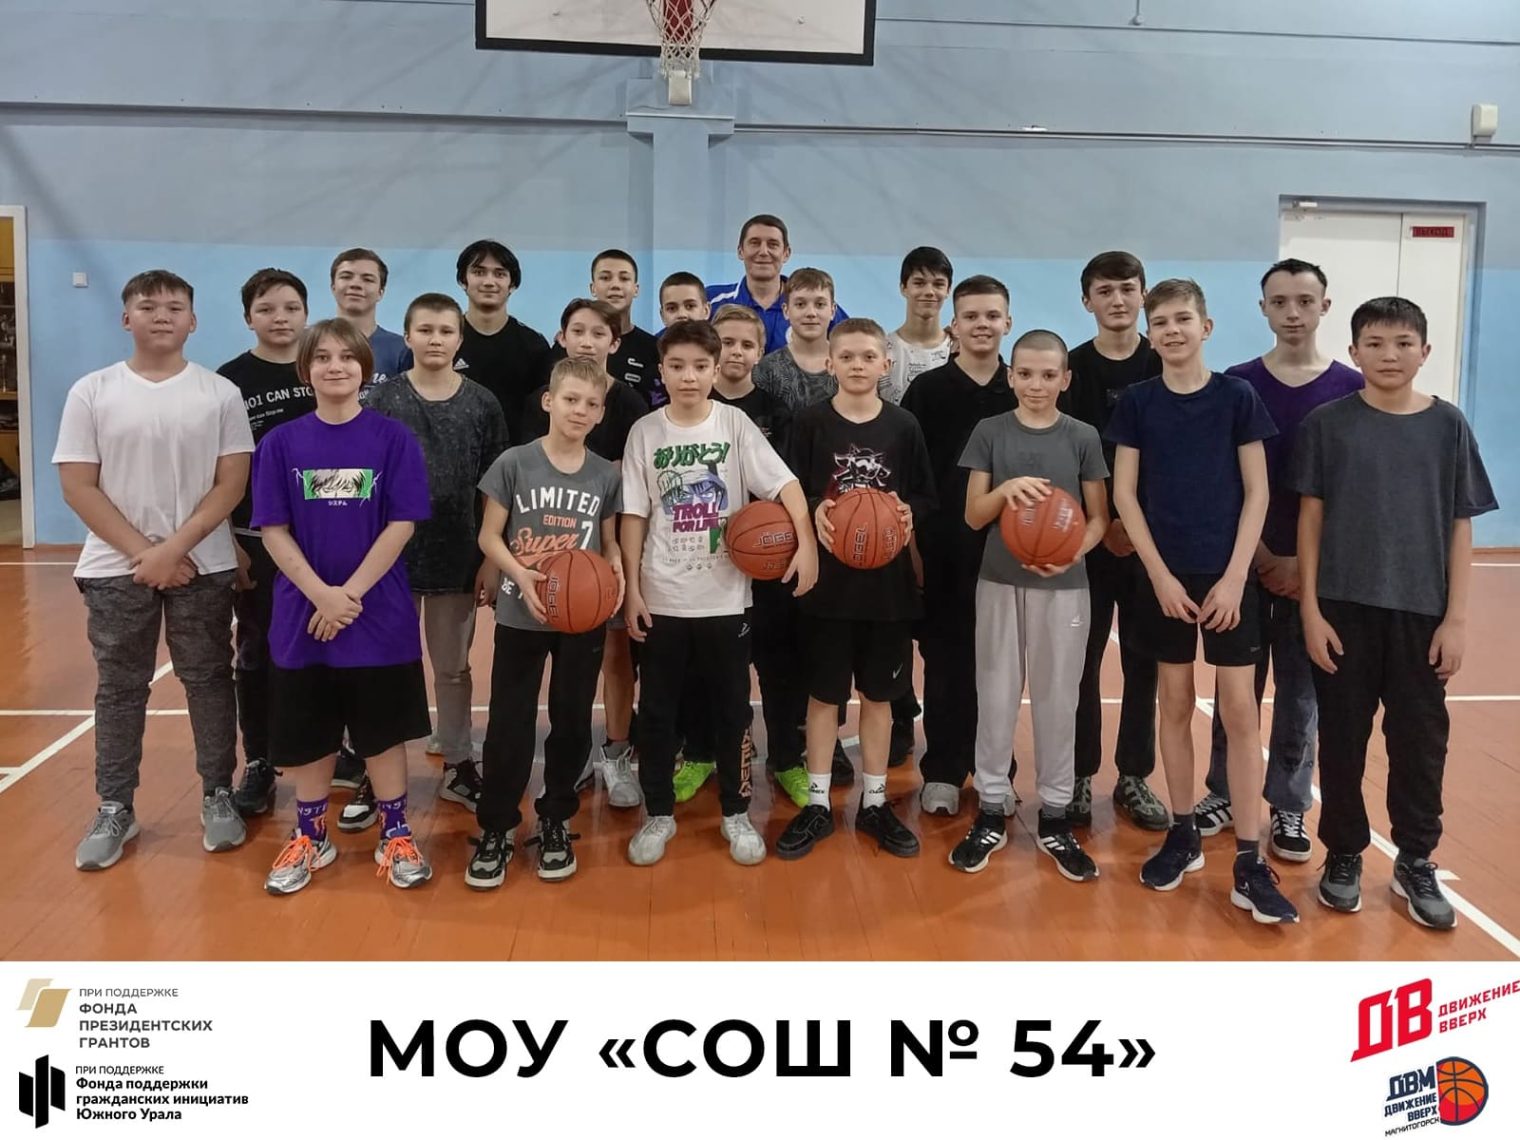 Движение вверх. В Магнитогорске проводятся баскетбольные тренировки для школьников